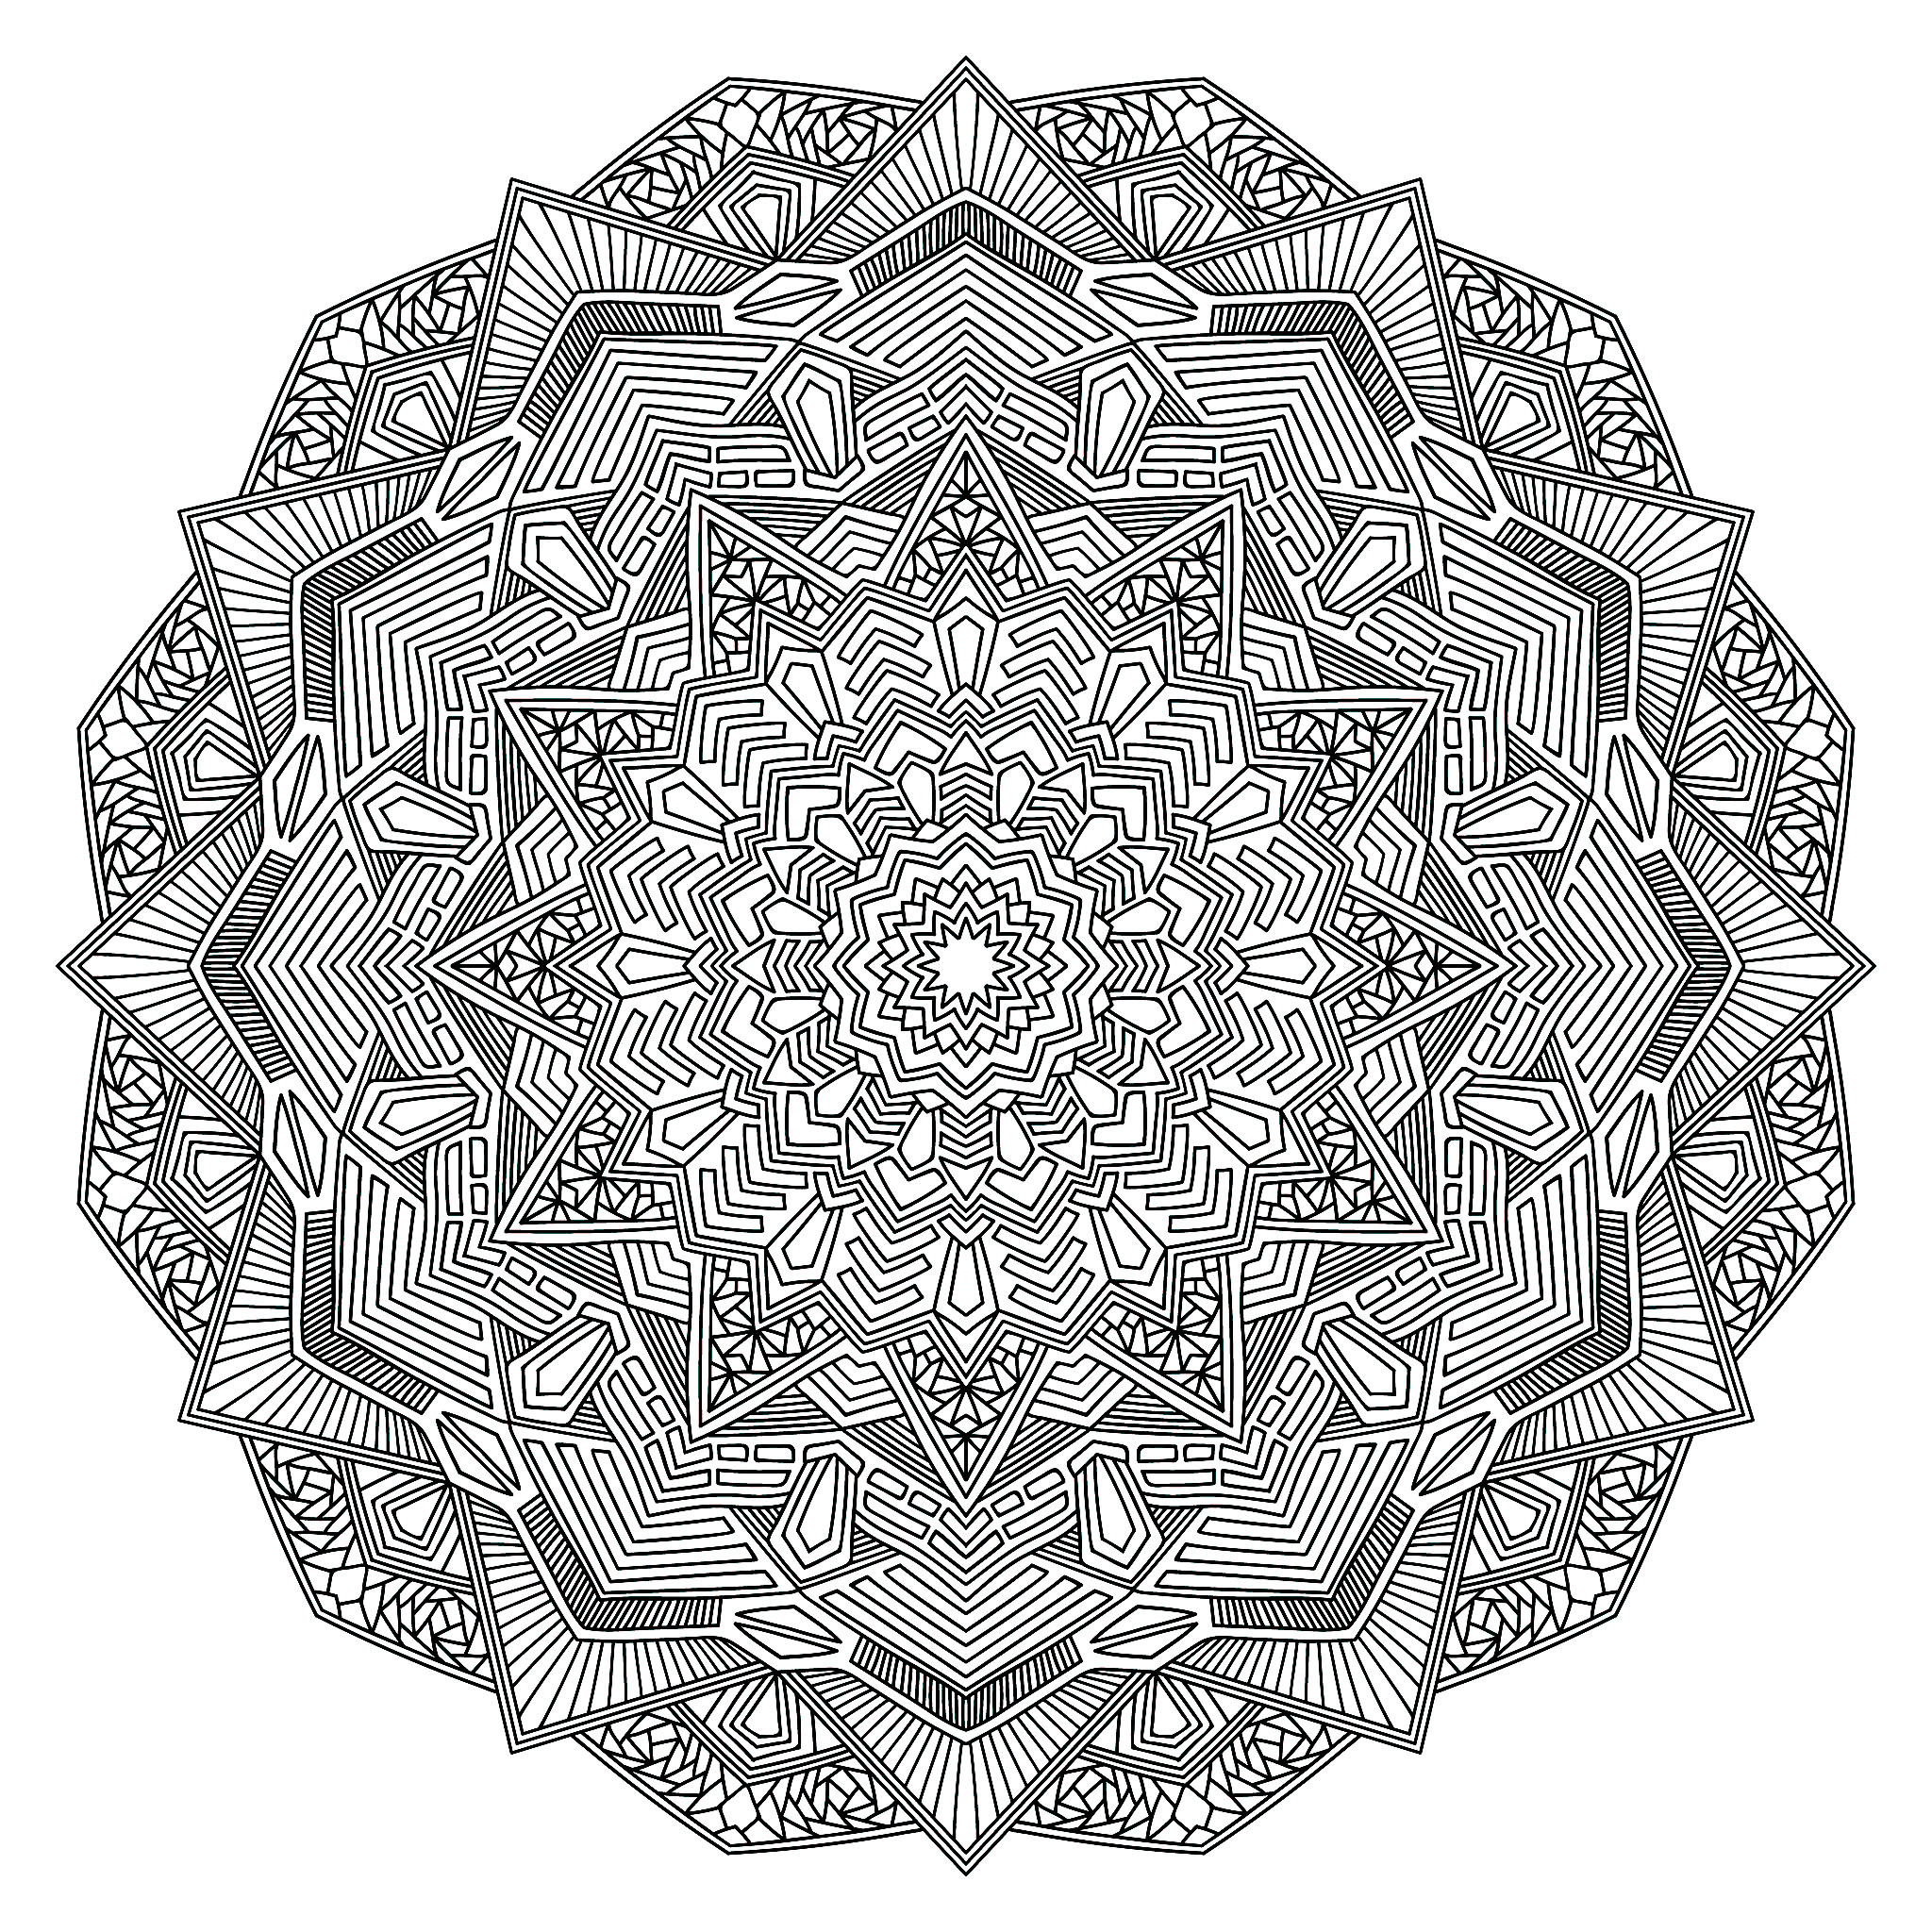 Relájese durante unos minutos con este magnífico mandala compuesto por formas muy simétricas, geométricas y armoniosas.